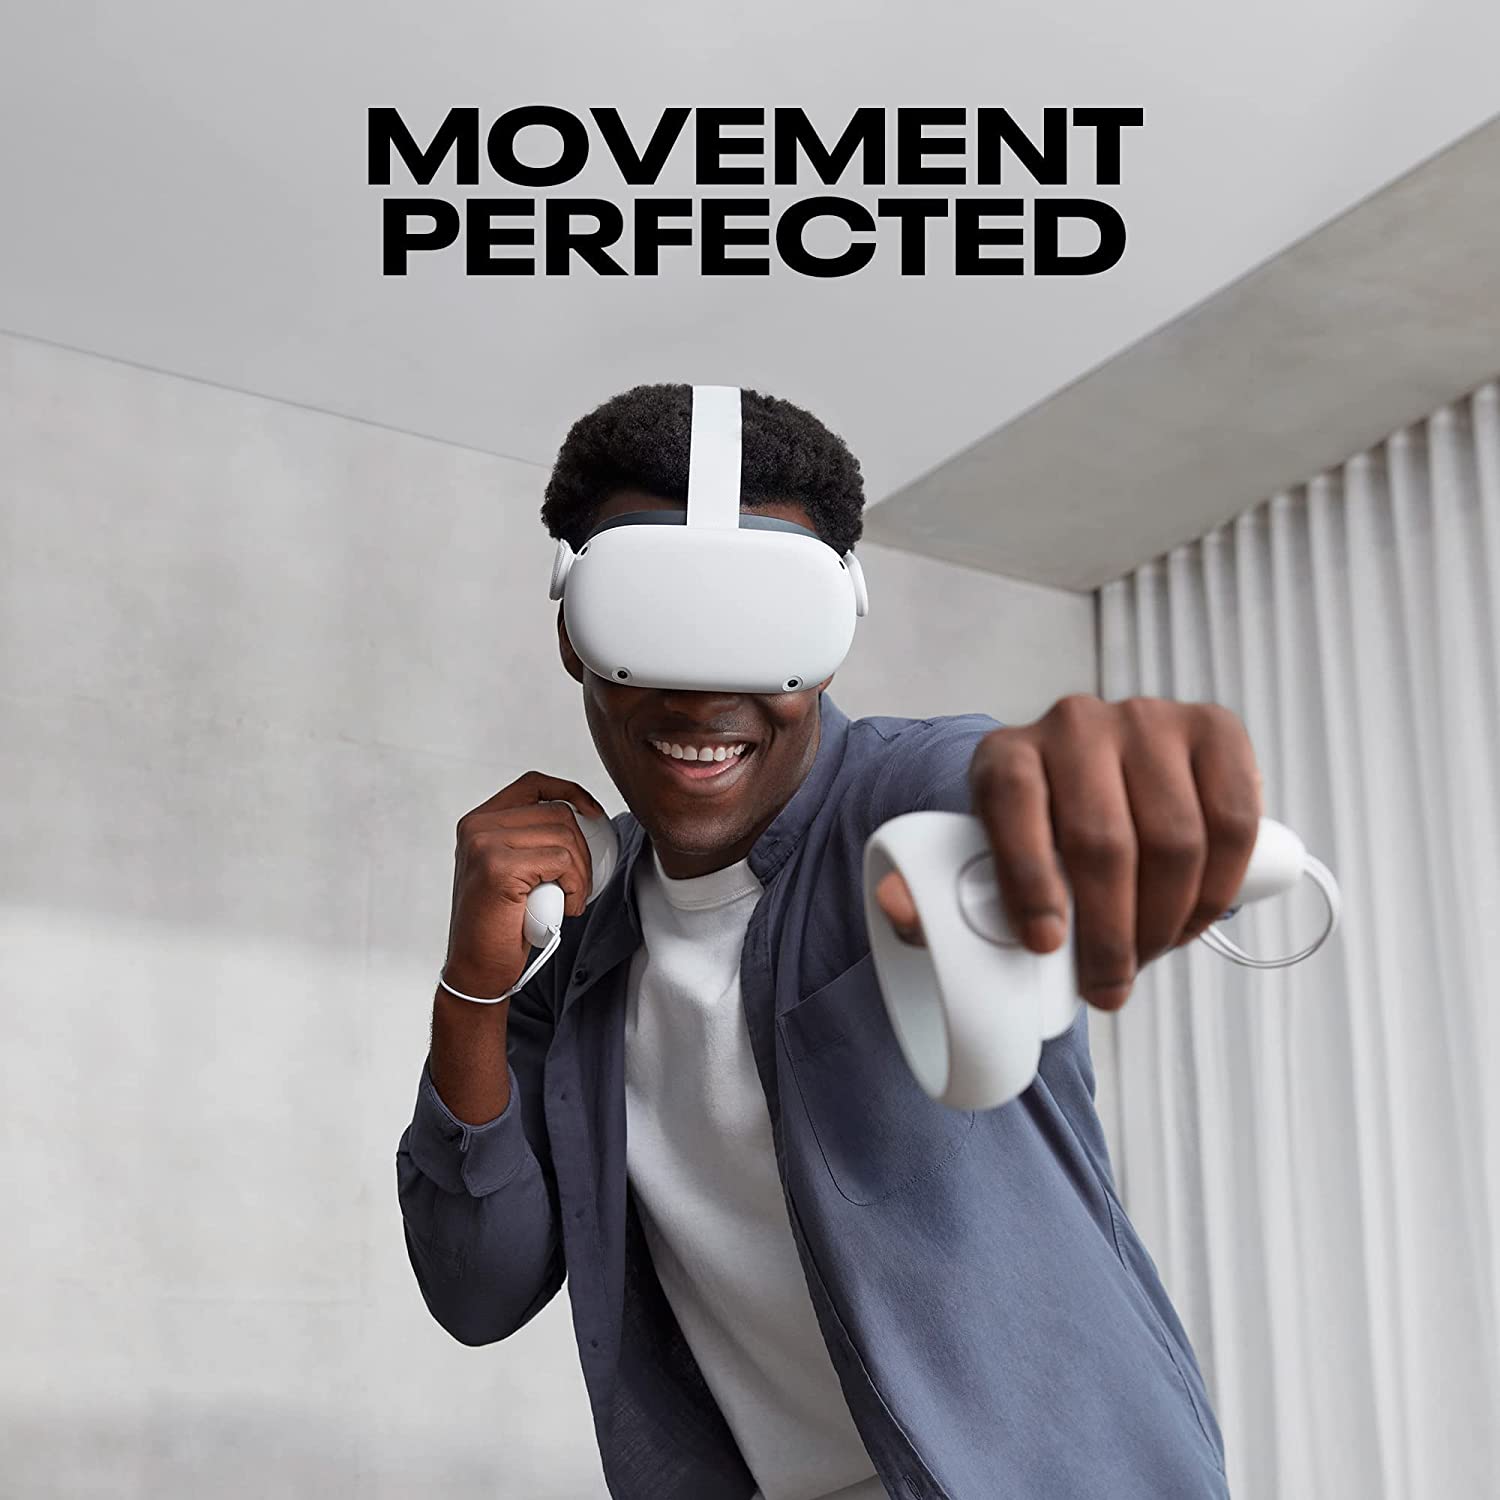 Kính thực tế ảo VR Oculus Quest 2 (128GB) | Trả góp